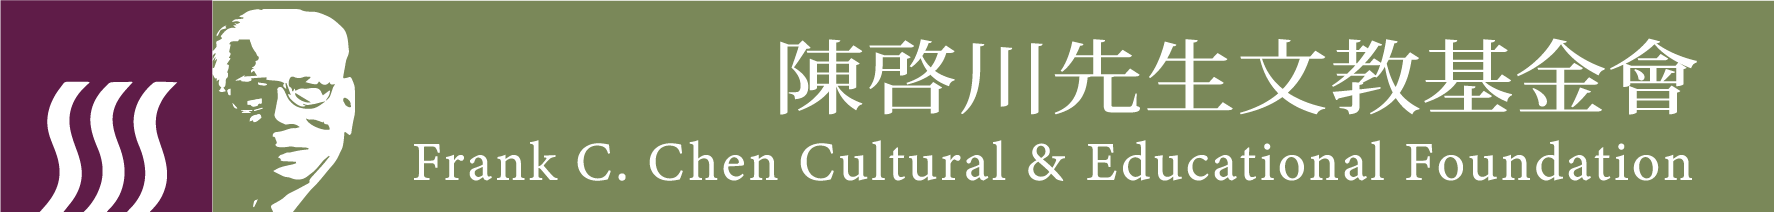 陳啟川先生文教基金會贊助logo